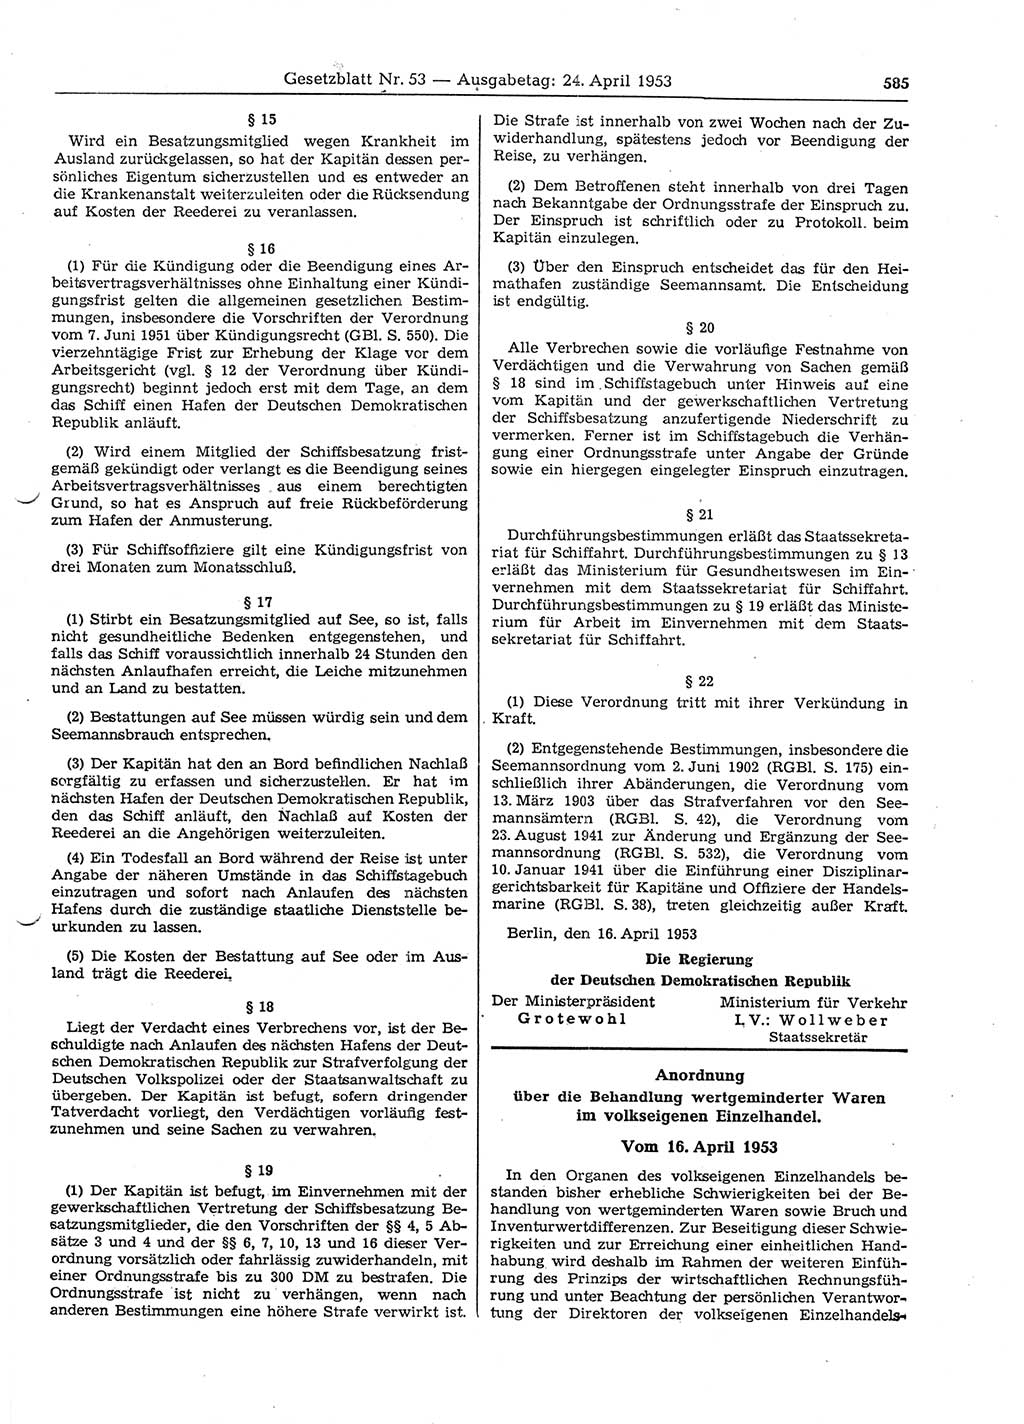 Gesetzblatt (GBl.) der Deutschen Demokratischen Republik (DDR) 1953, Seite 585 (GBl. DDR 1953, S. 585)